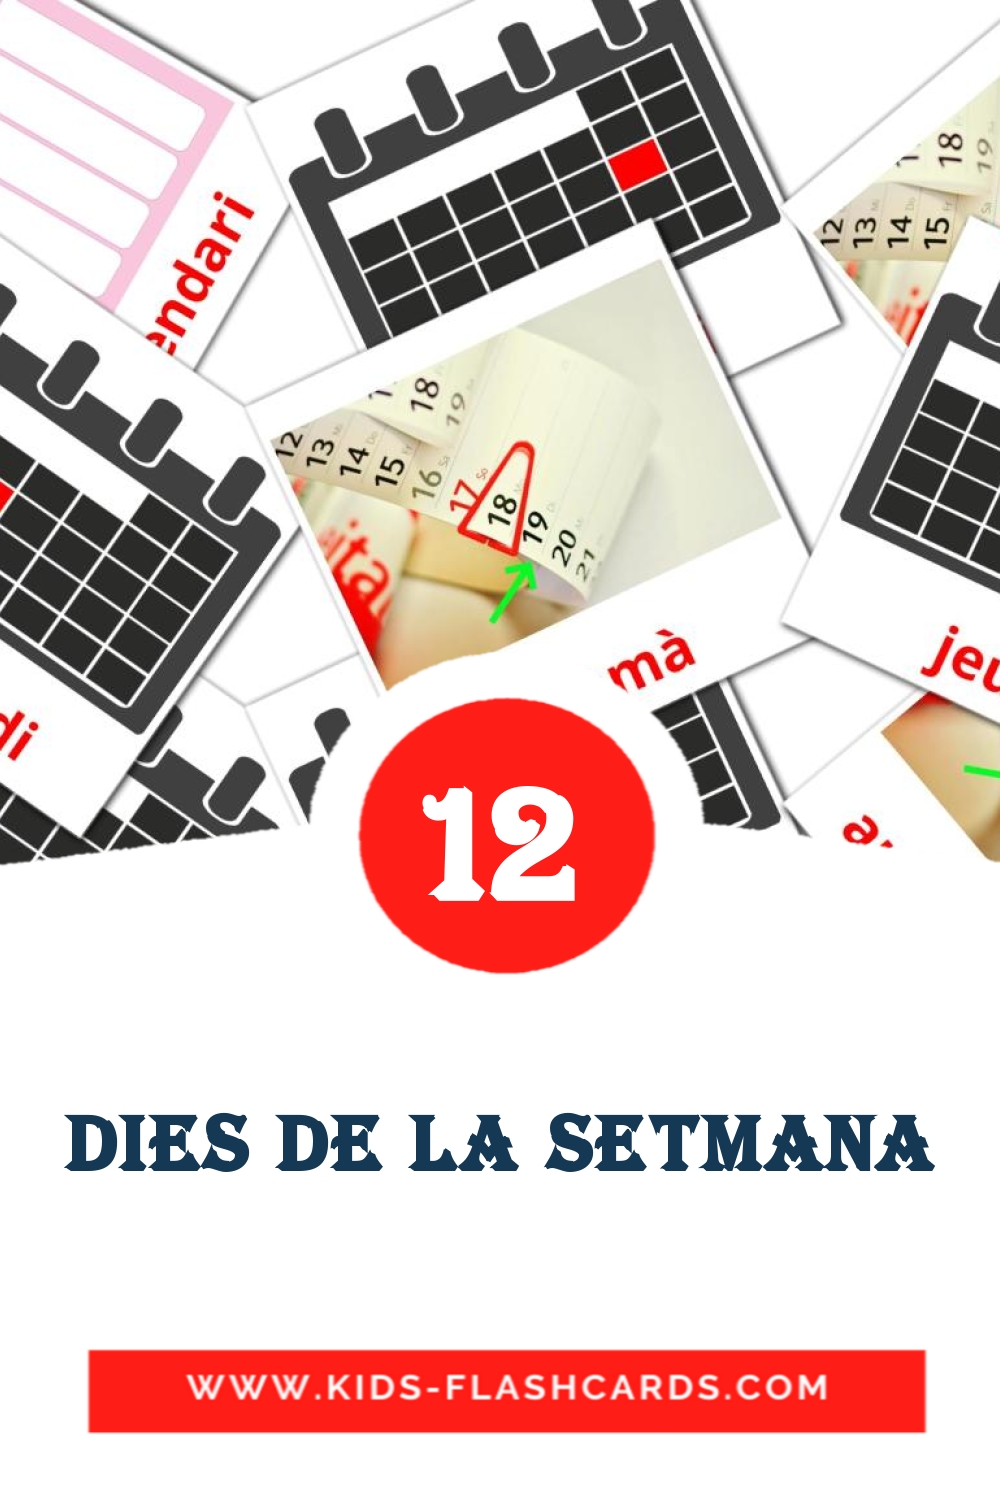 12 Dies de la setmana fotokaarten voor kleuters in het catalaans